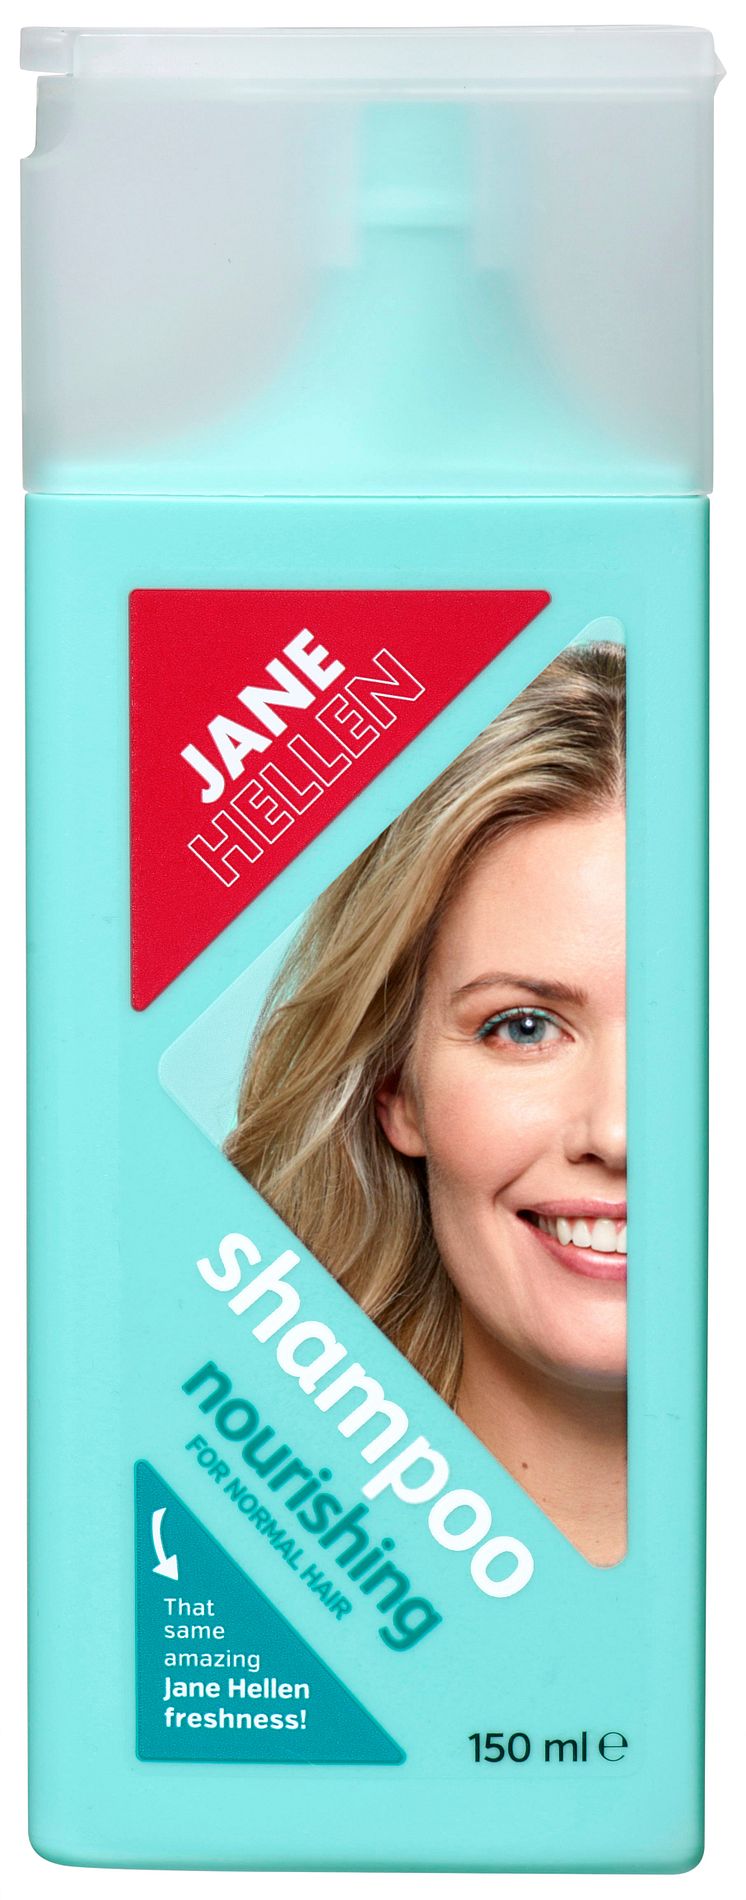 NEW! JANE HELLEN SHAMPOO FOR NORMAL HAIR 150 ML 29,90 SEK.jpg